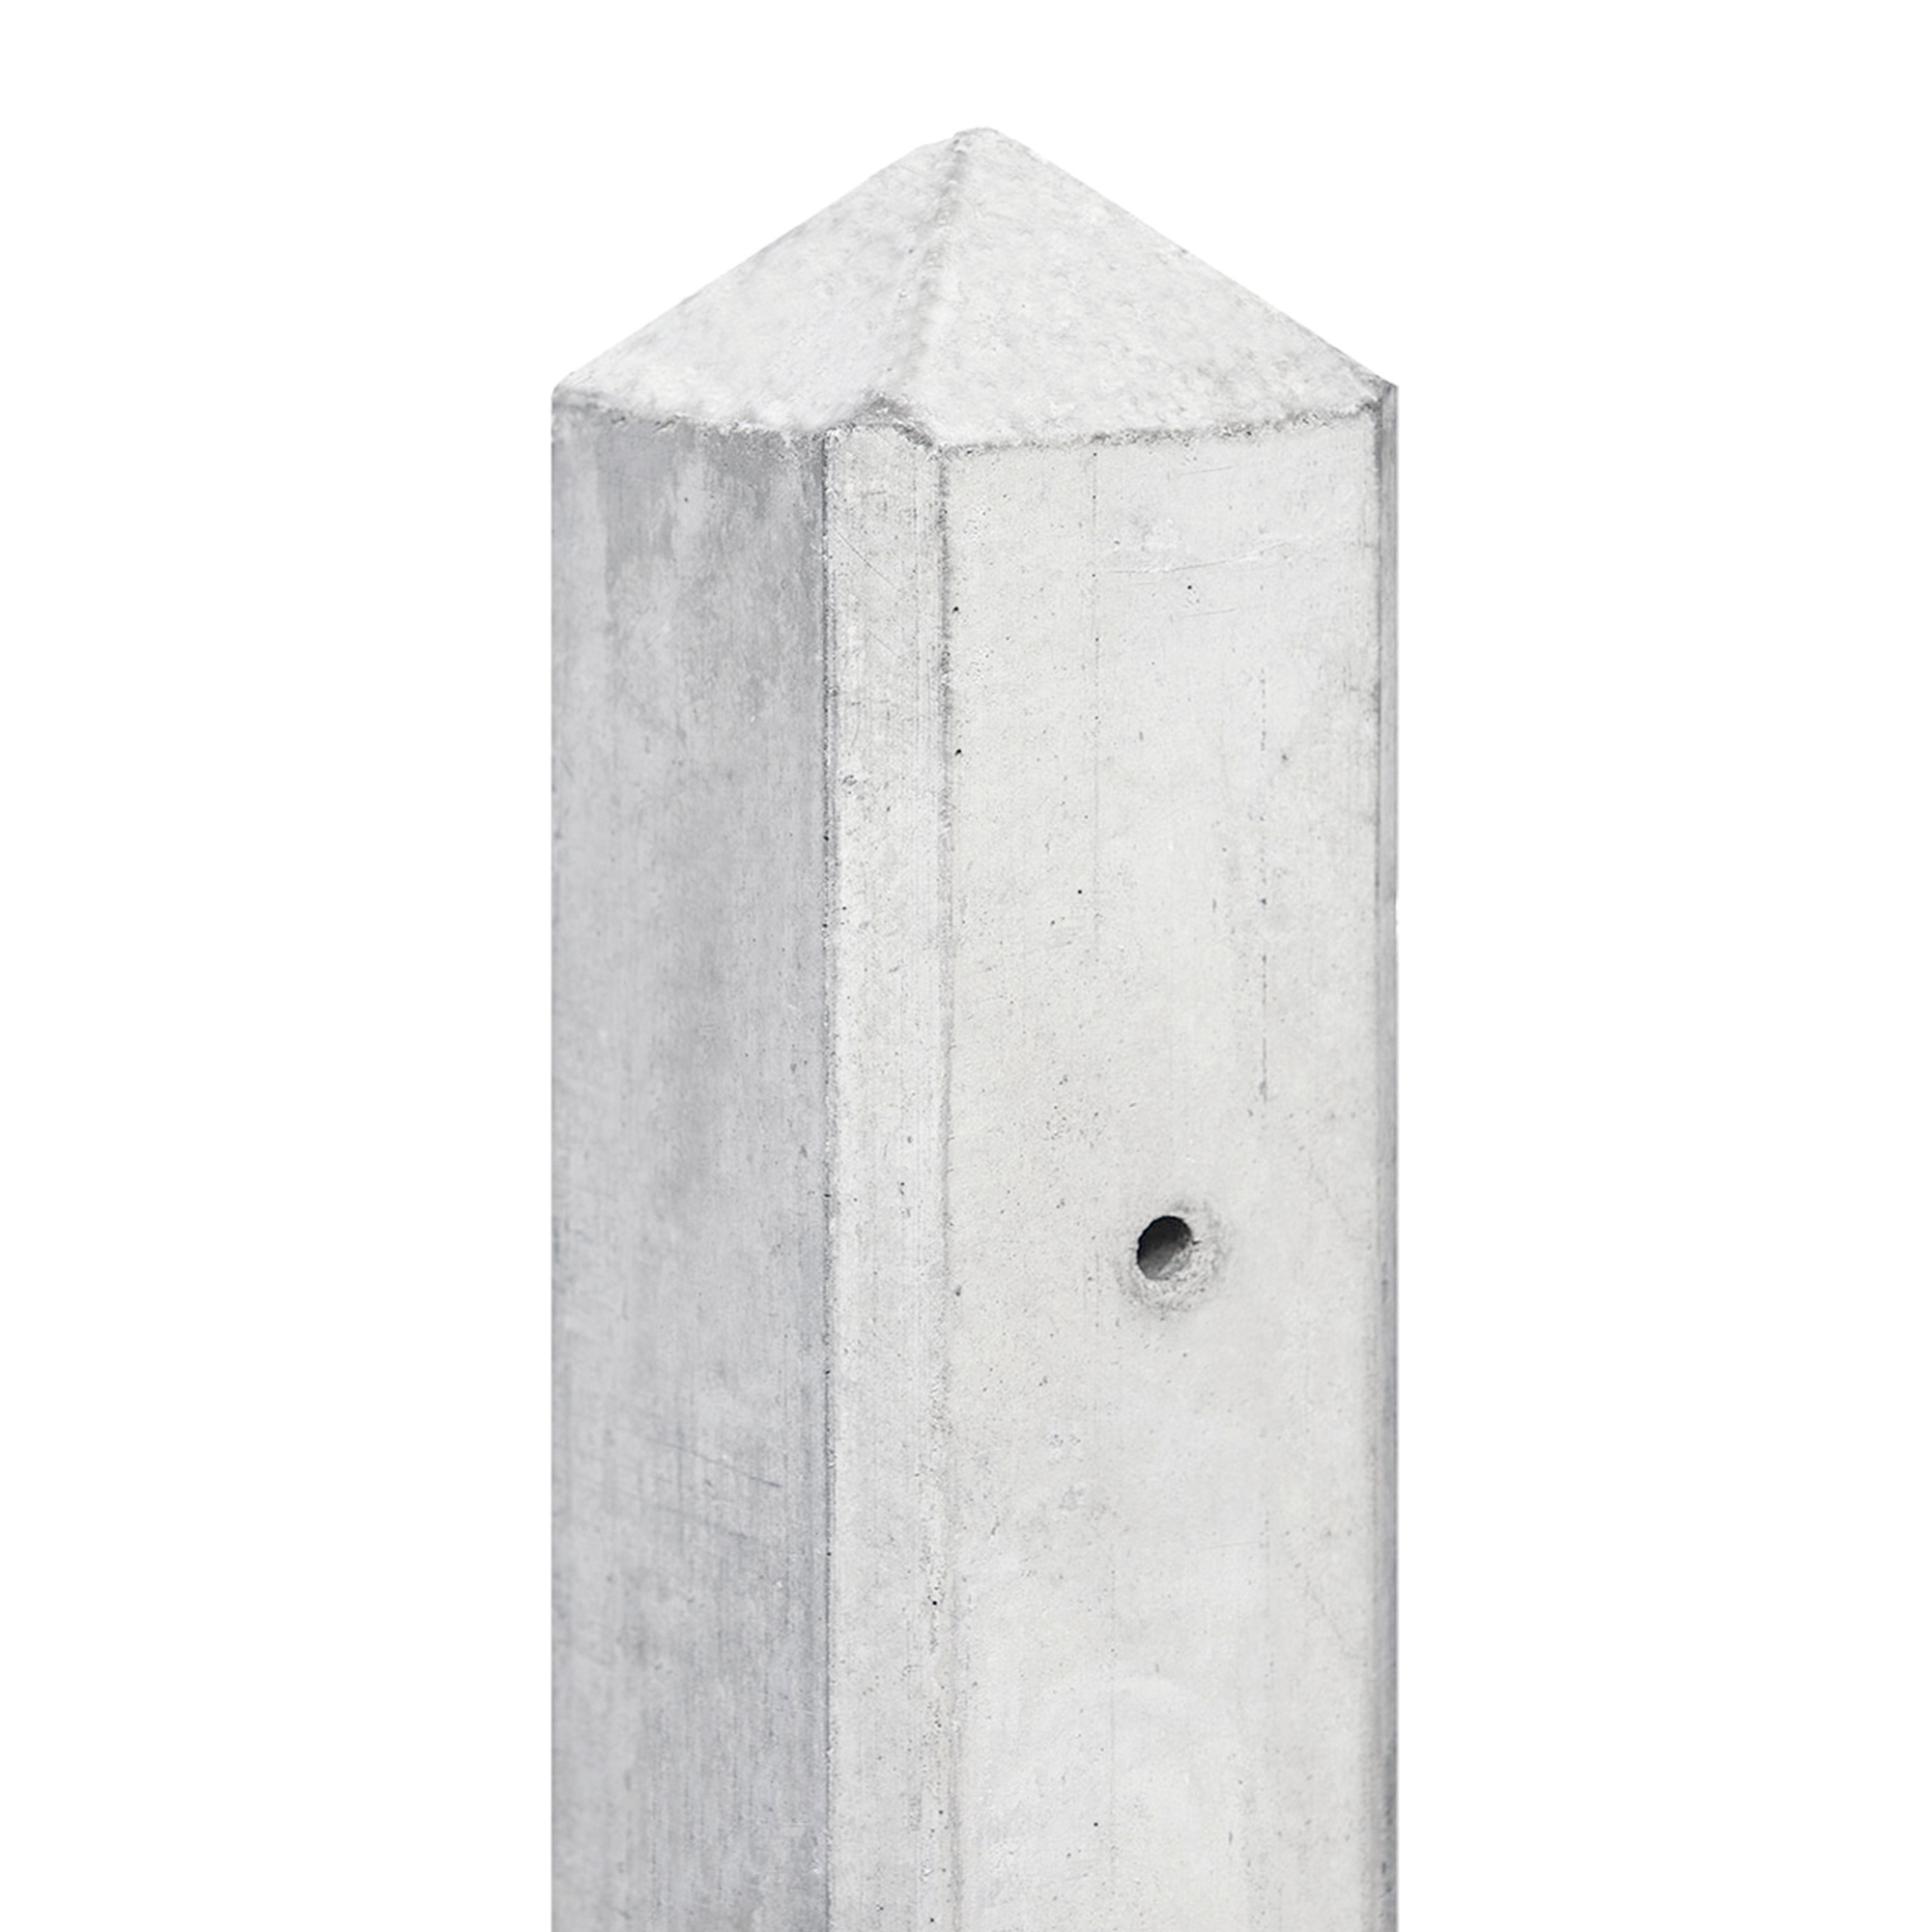 Berton©-paal Geul wit/grijs diamantkop 10 x 10 x 280 cm kabeldoorvoer